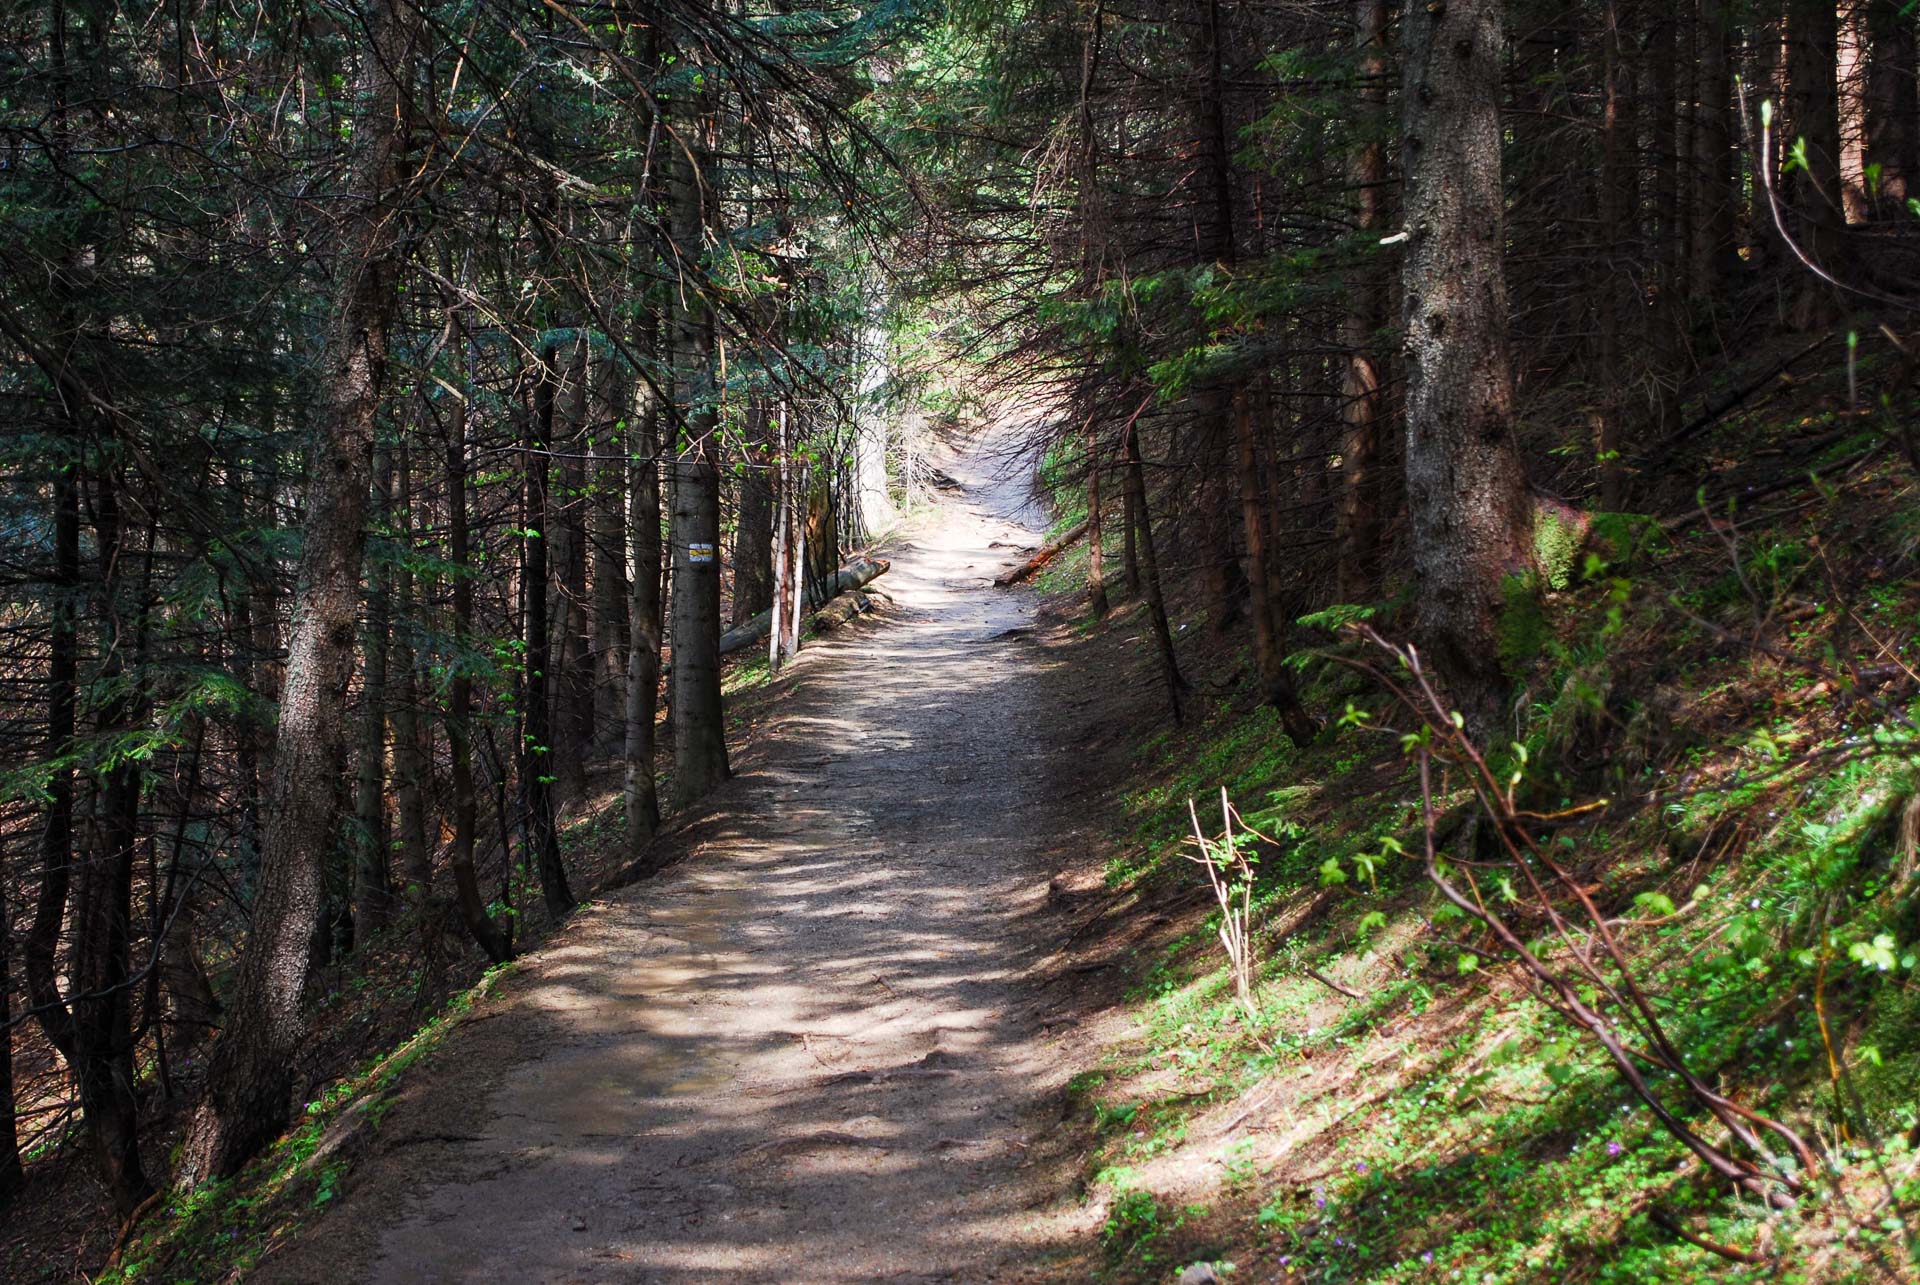 Szlak Żółty wiodący przez las w górnej części Doliny Białego.